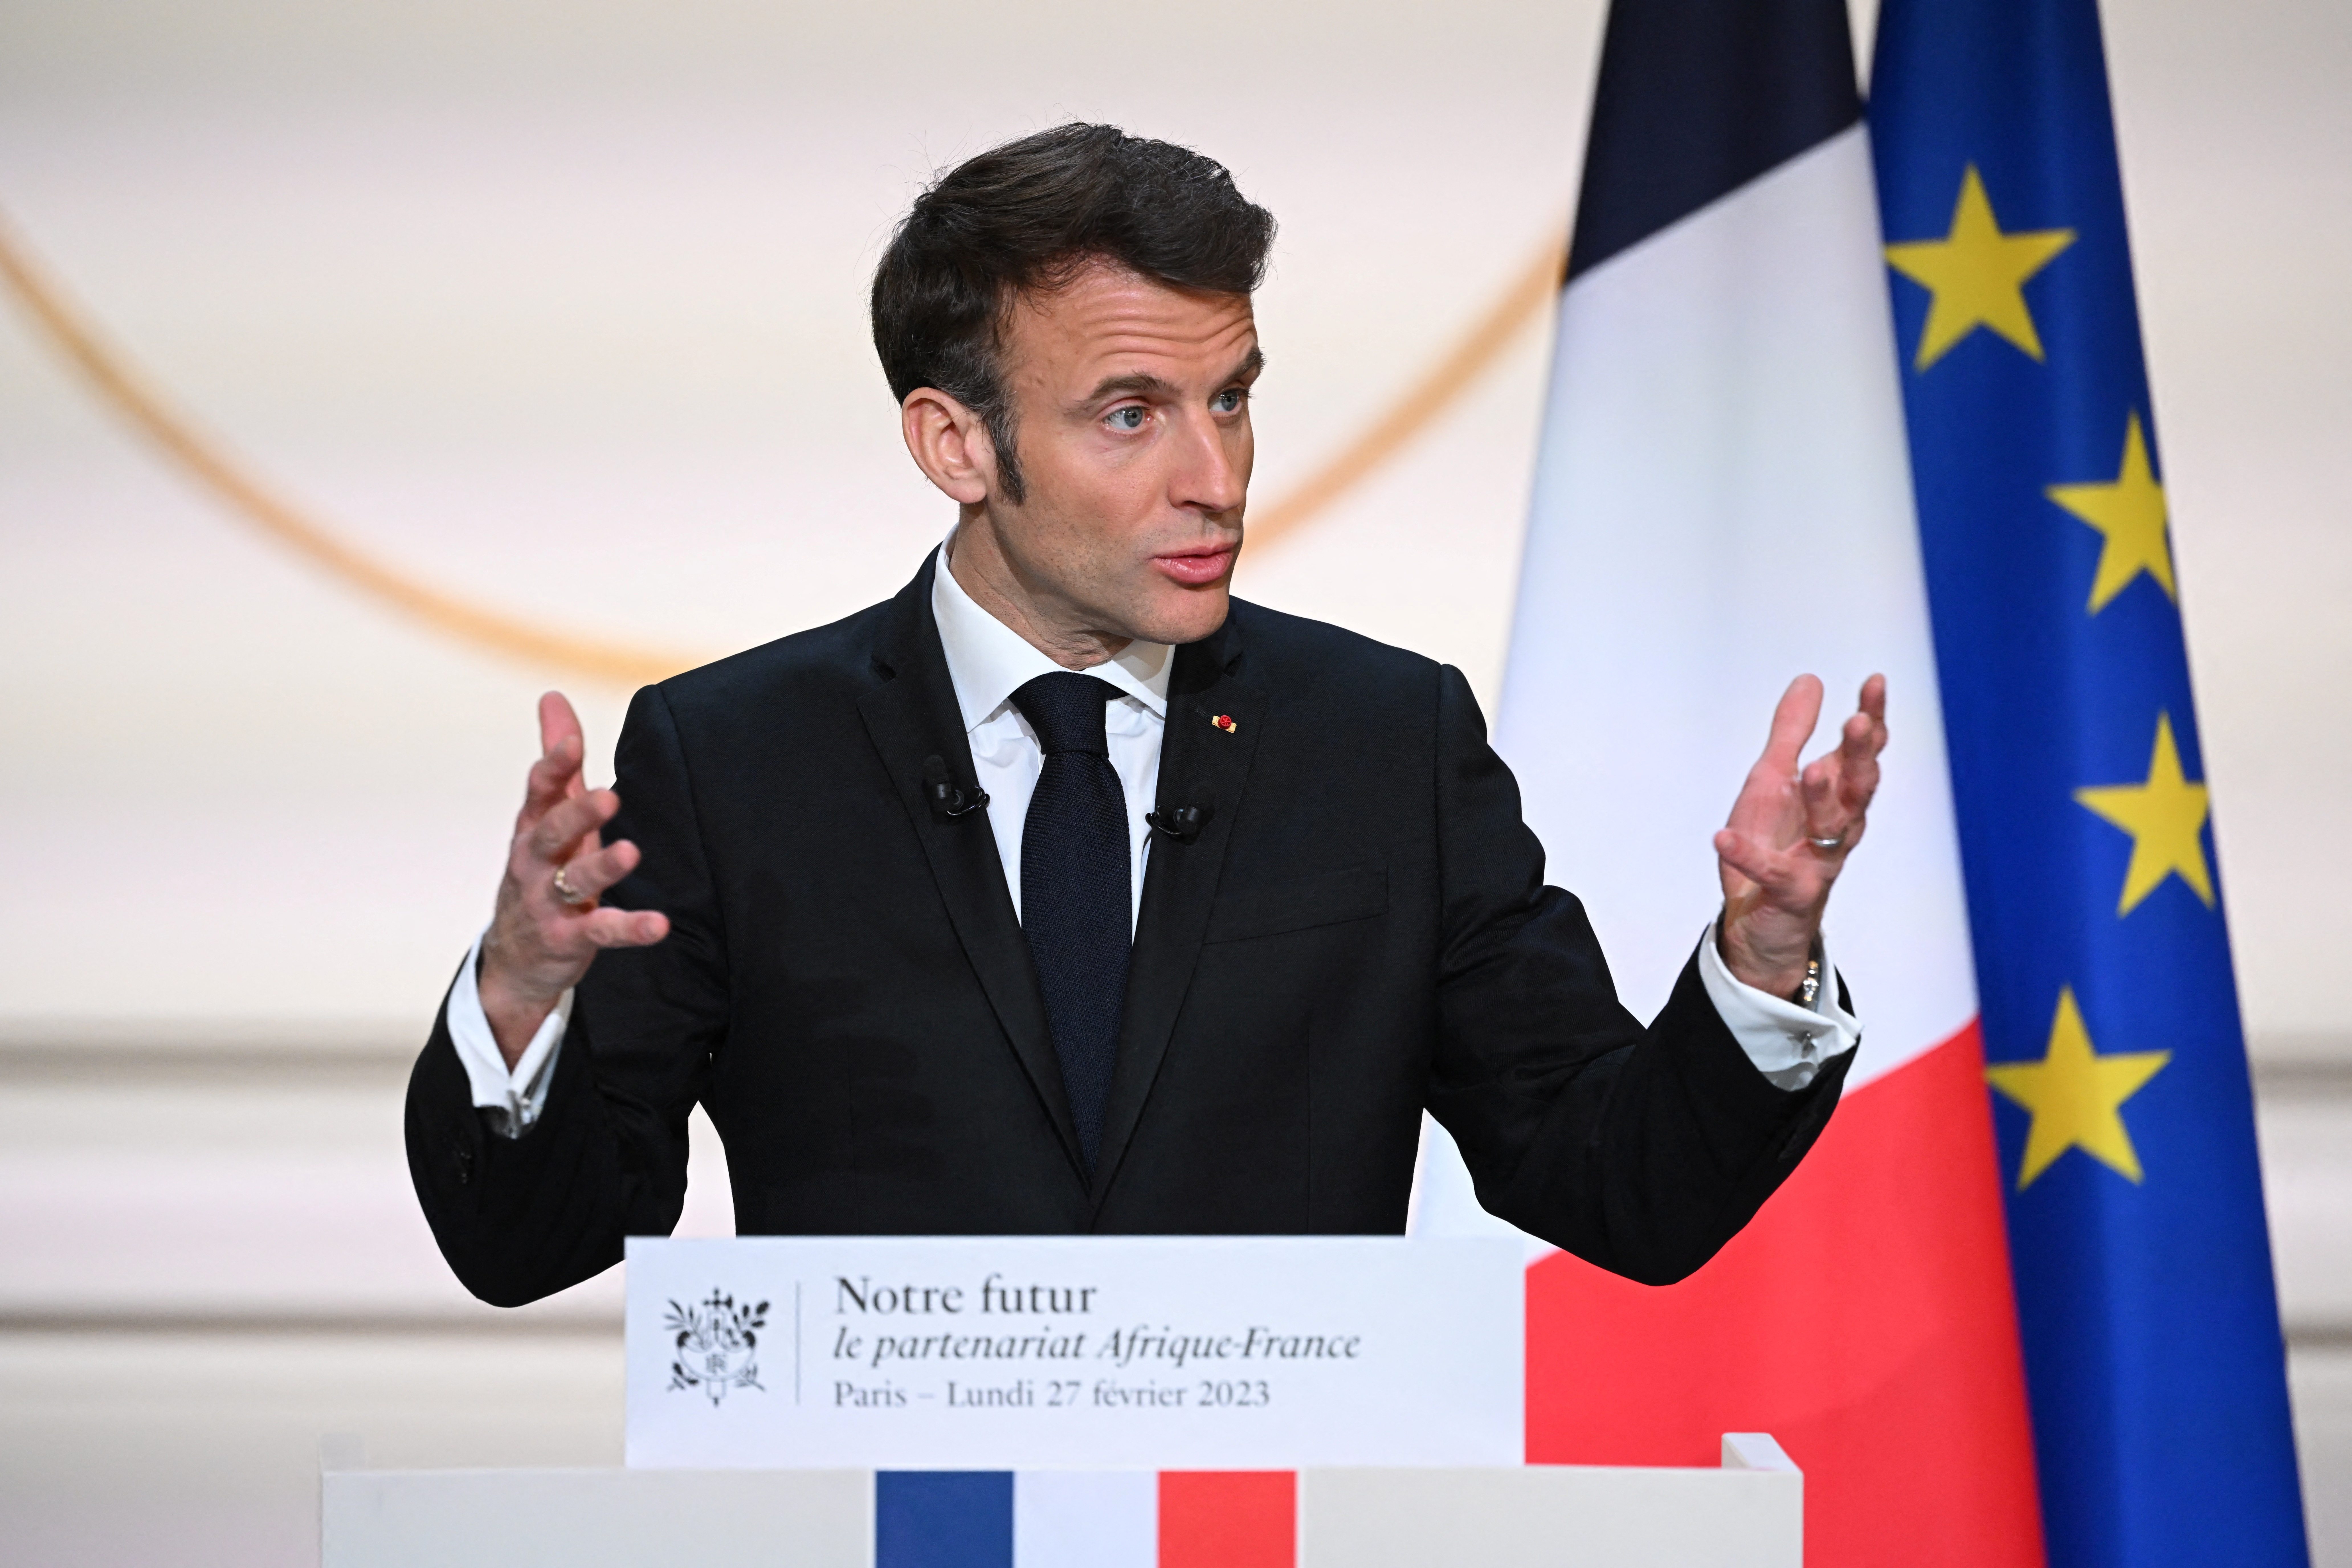 Travail, justice (et ordre républicain), progrès : Macron fixe trois chantiers « pour retrouver l'élan de la nation »